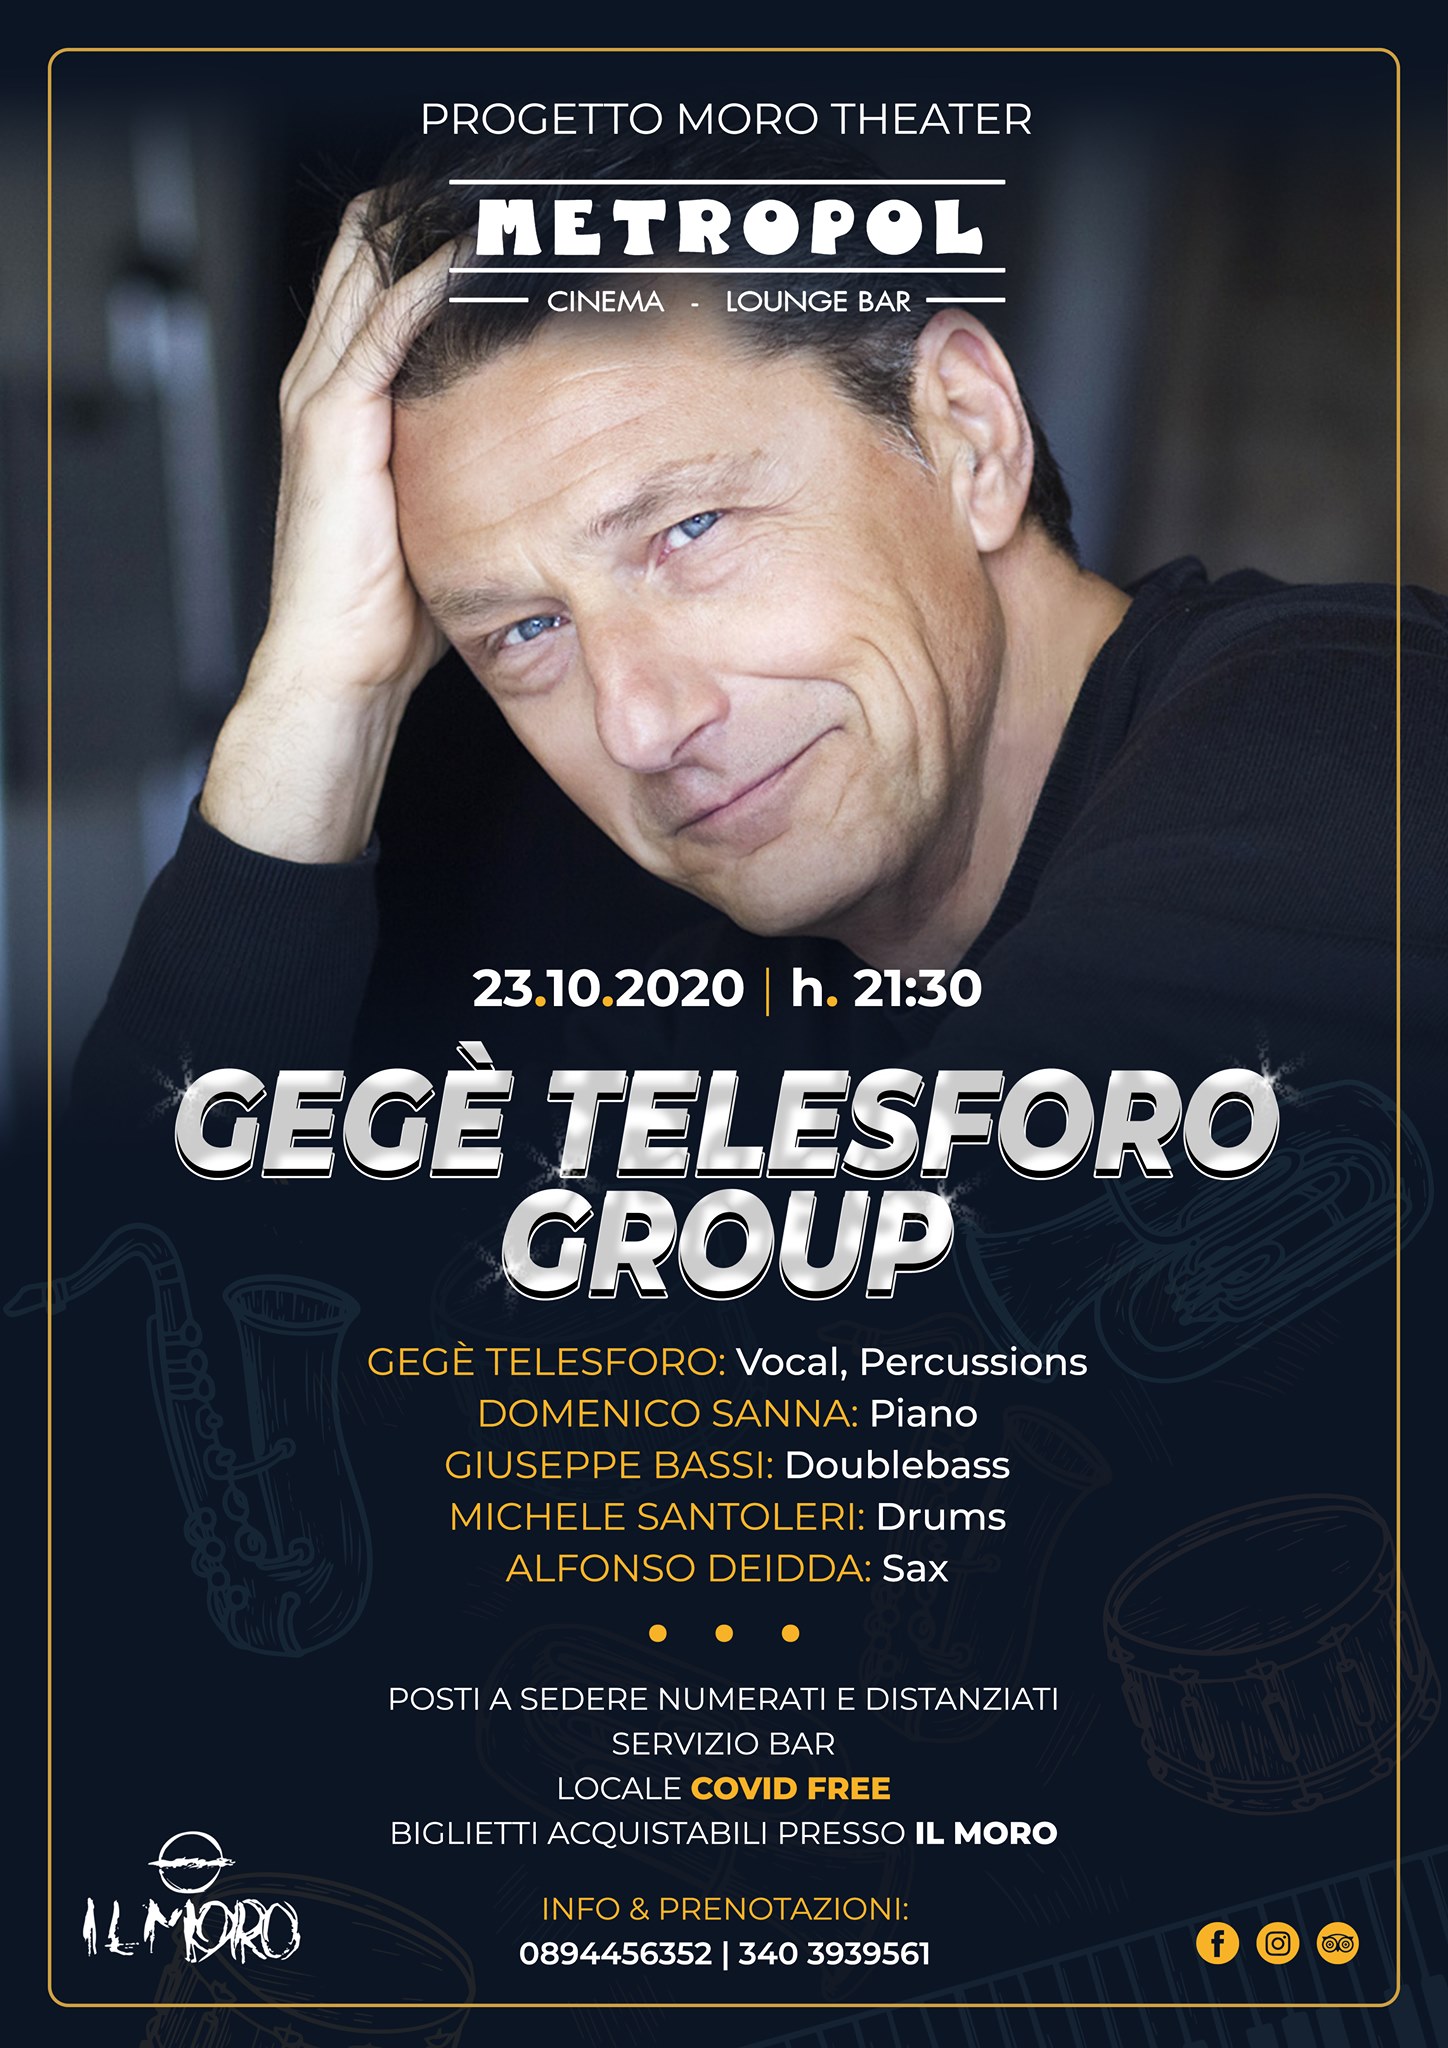 Pub Il Moro: venerdì 23 ottobre al Metropol – Gegè Telesforo Group